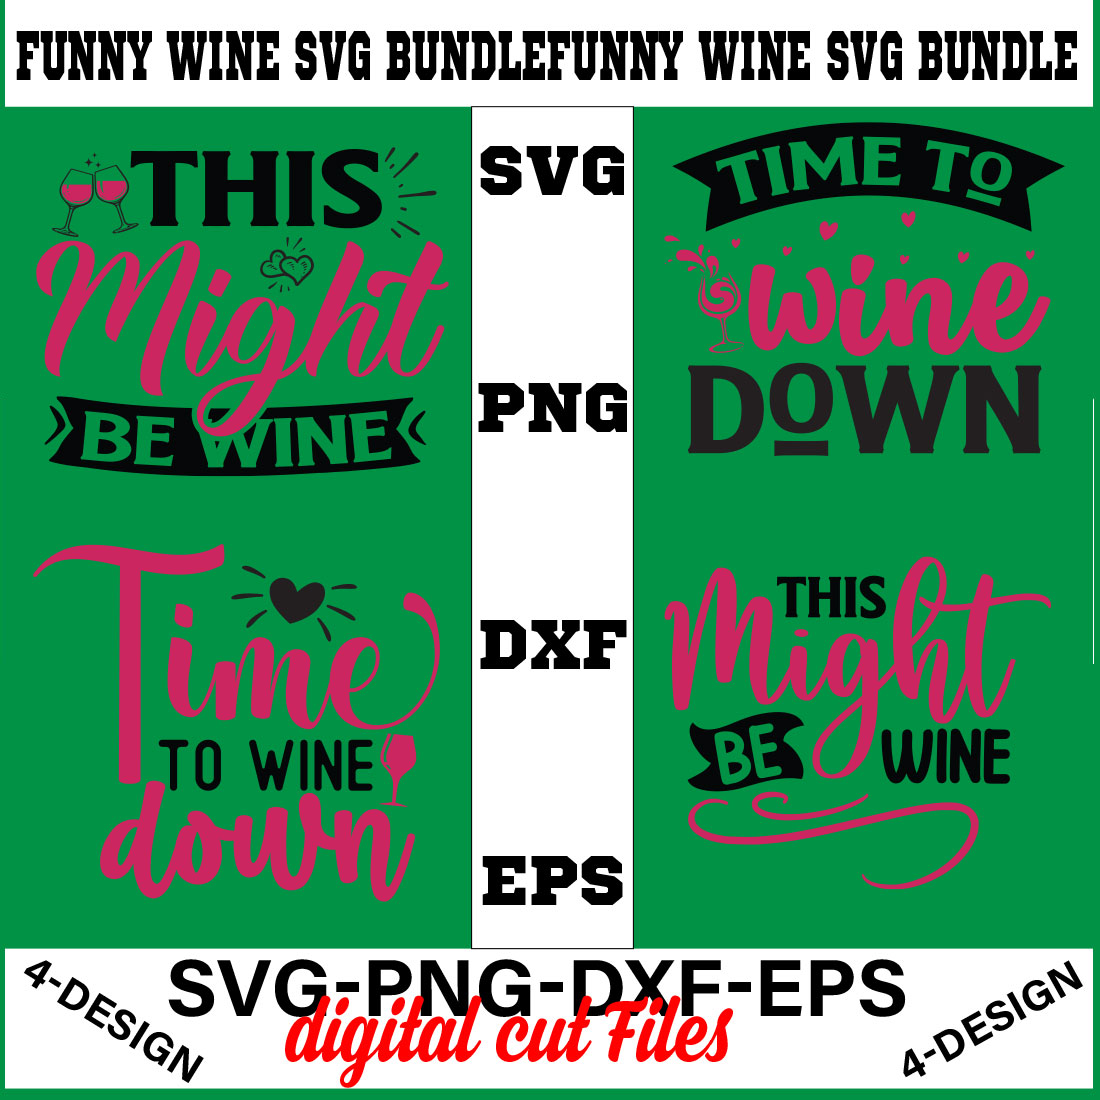 Funny Svg T-shirt Design Bundle Volume-09 cover image.